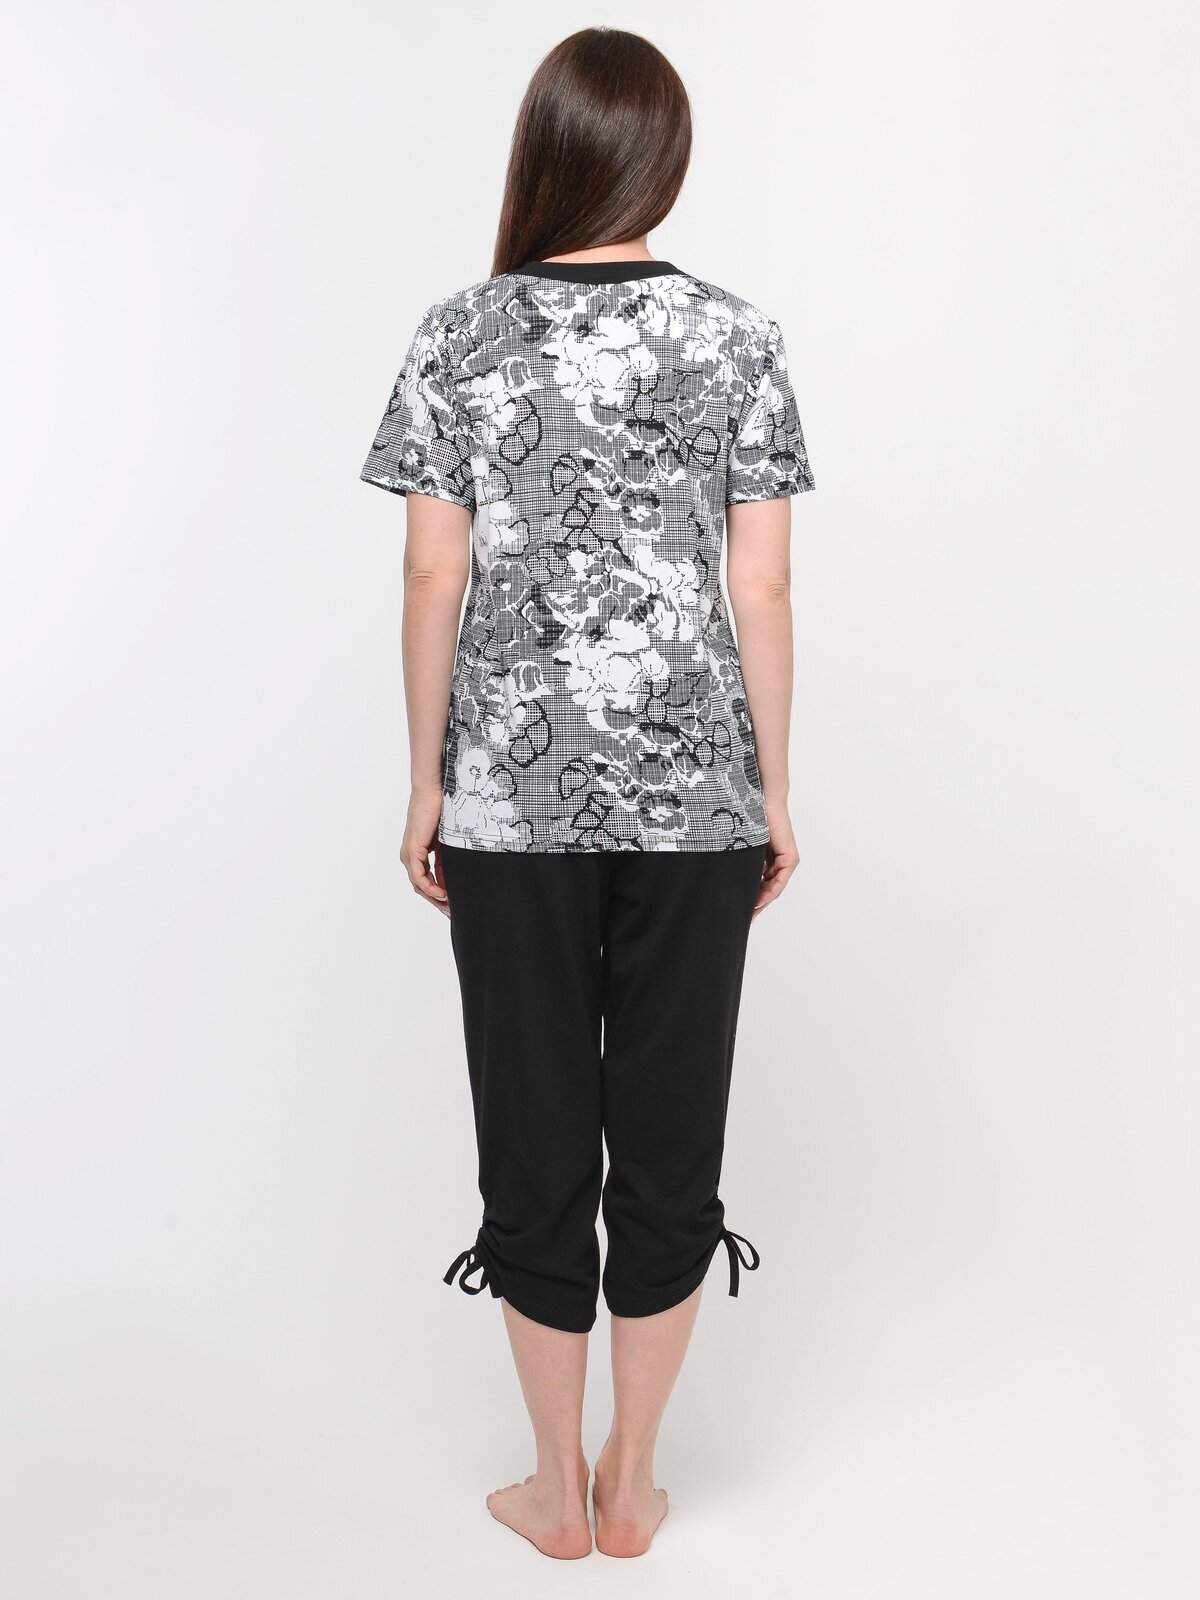 Пижама домашняя женская Алтекс футболка с бриджами черно-белая, размер 58 - фотография № 4